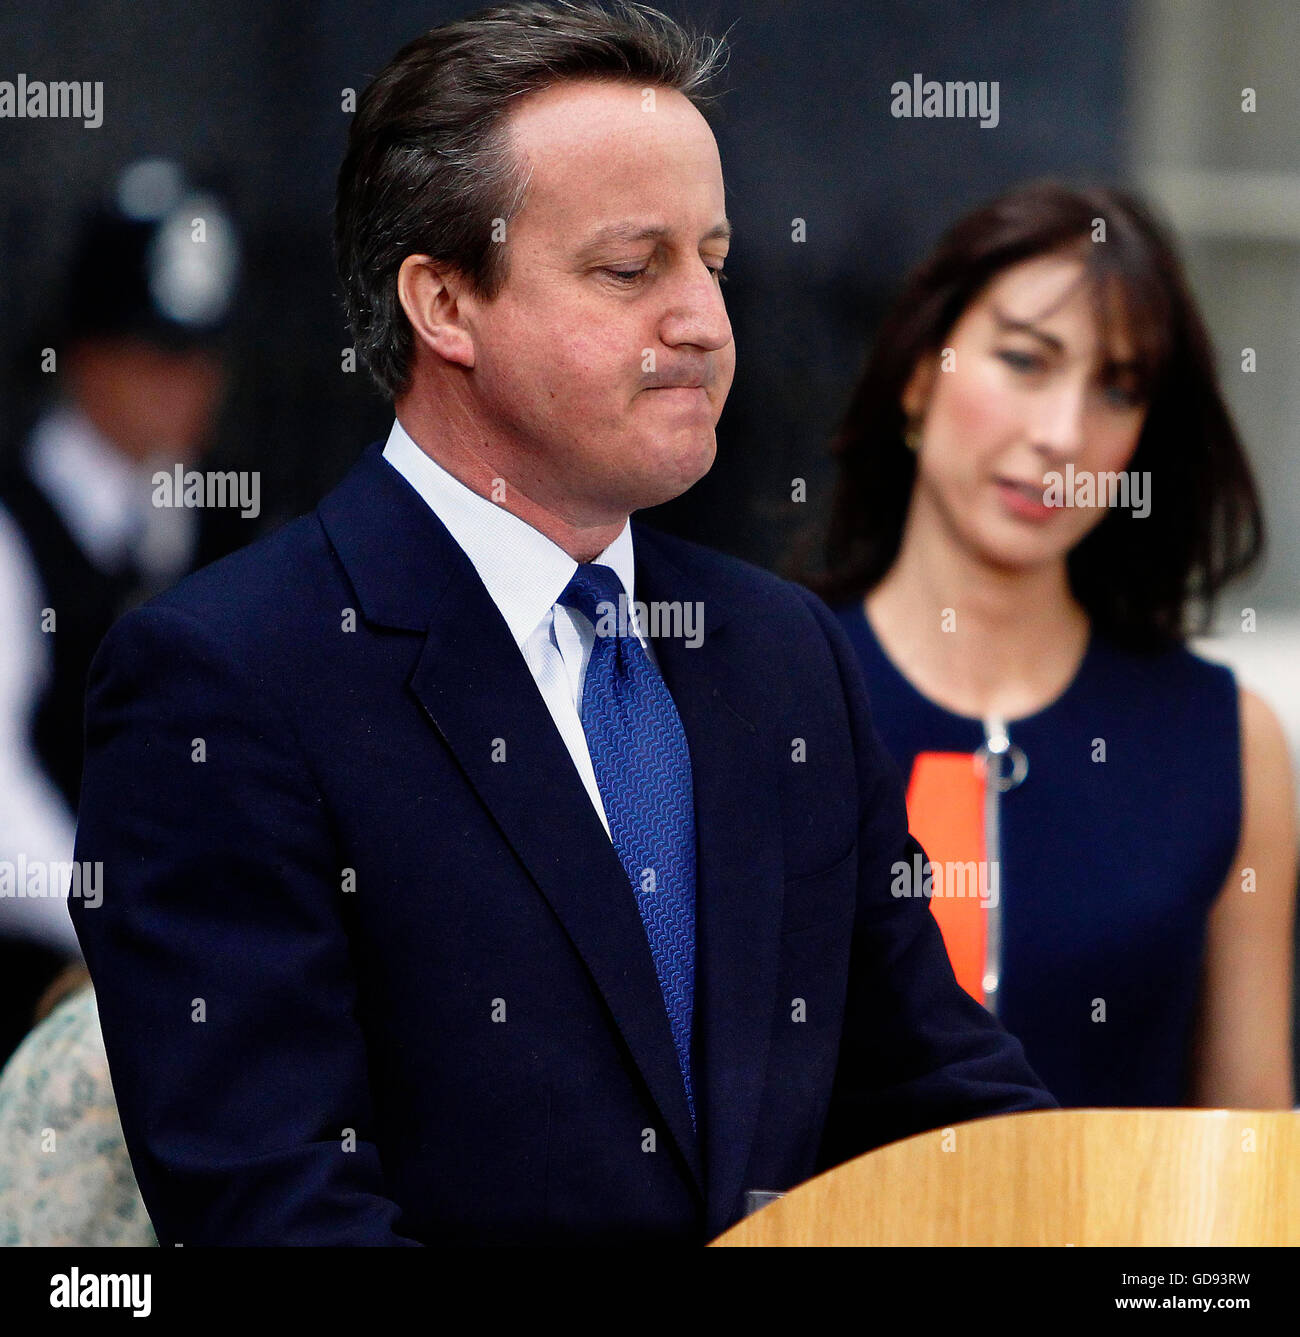 Londres, Reino Unido. El 13 de julio de 2016. David Cameron, habla a los mundos pulse en su último día como primer ministro en Downing Street. Crédito: Ojo omnipresente/Alamy Live News Foto de stock